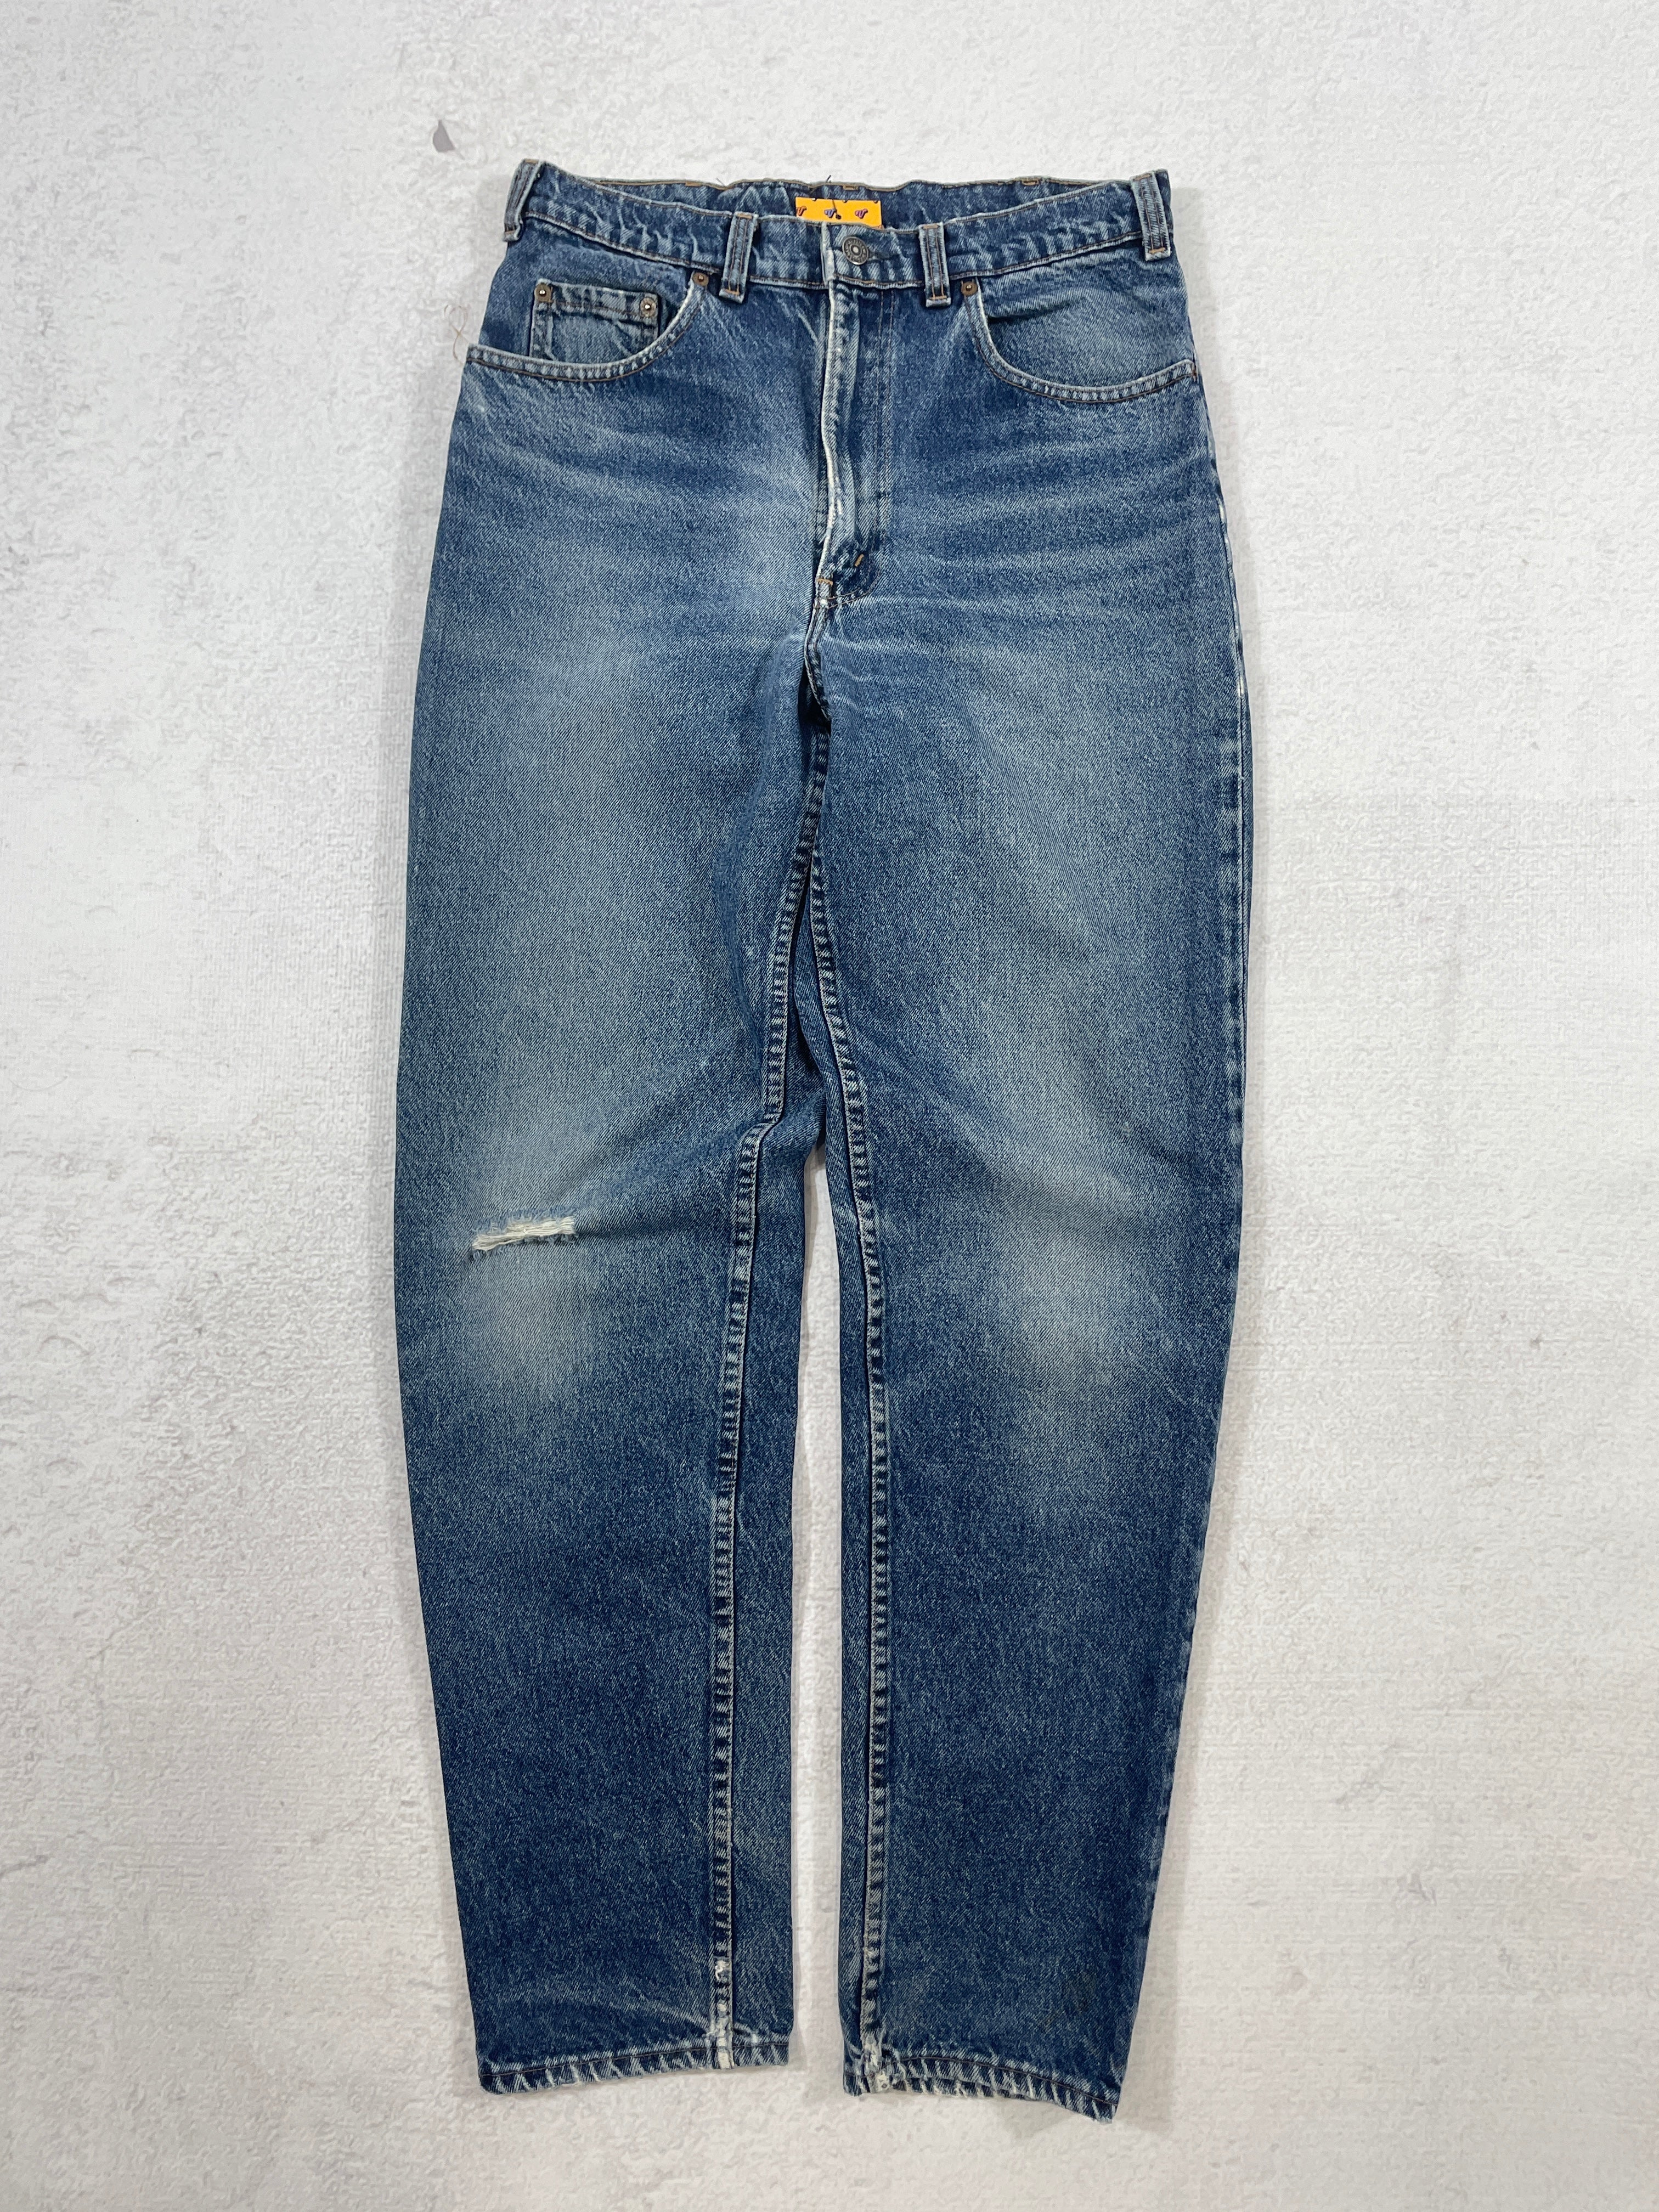 Vintage Levis Jeans - Men's 34Wx34L